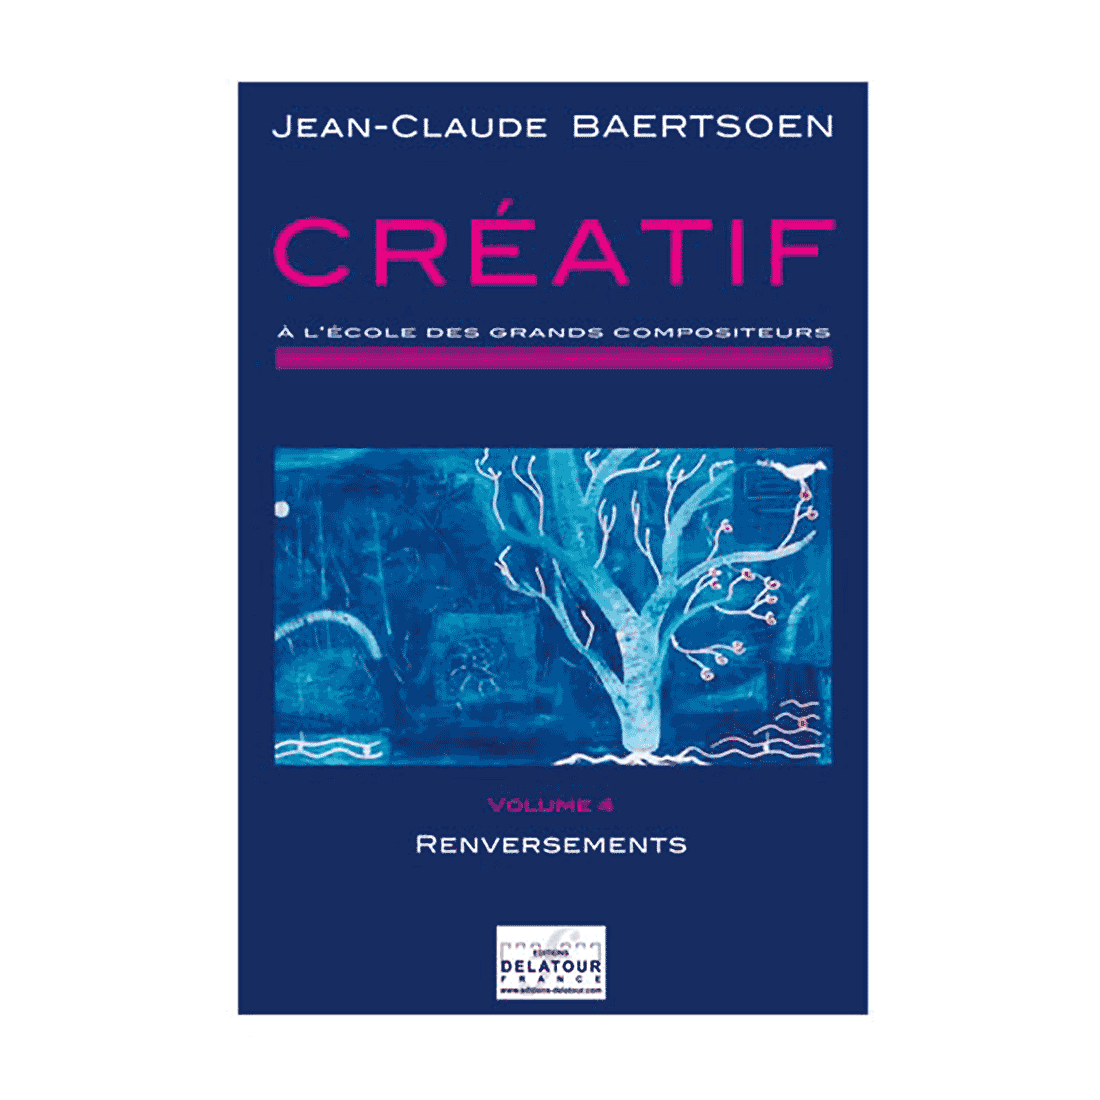 CREATIF A l'école des grands compositeurs - Vol. 4